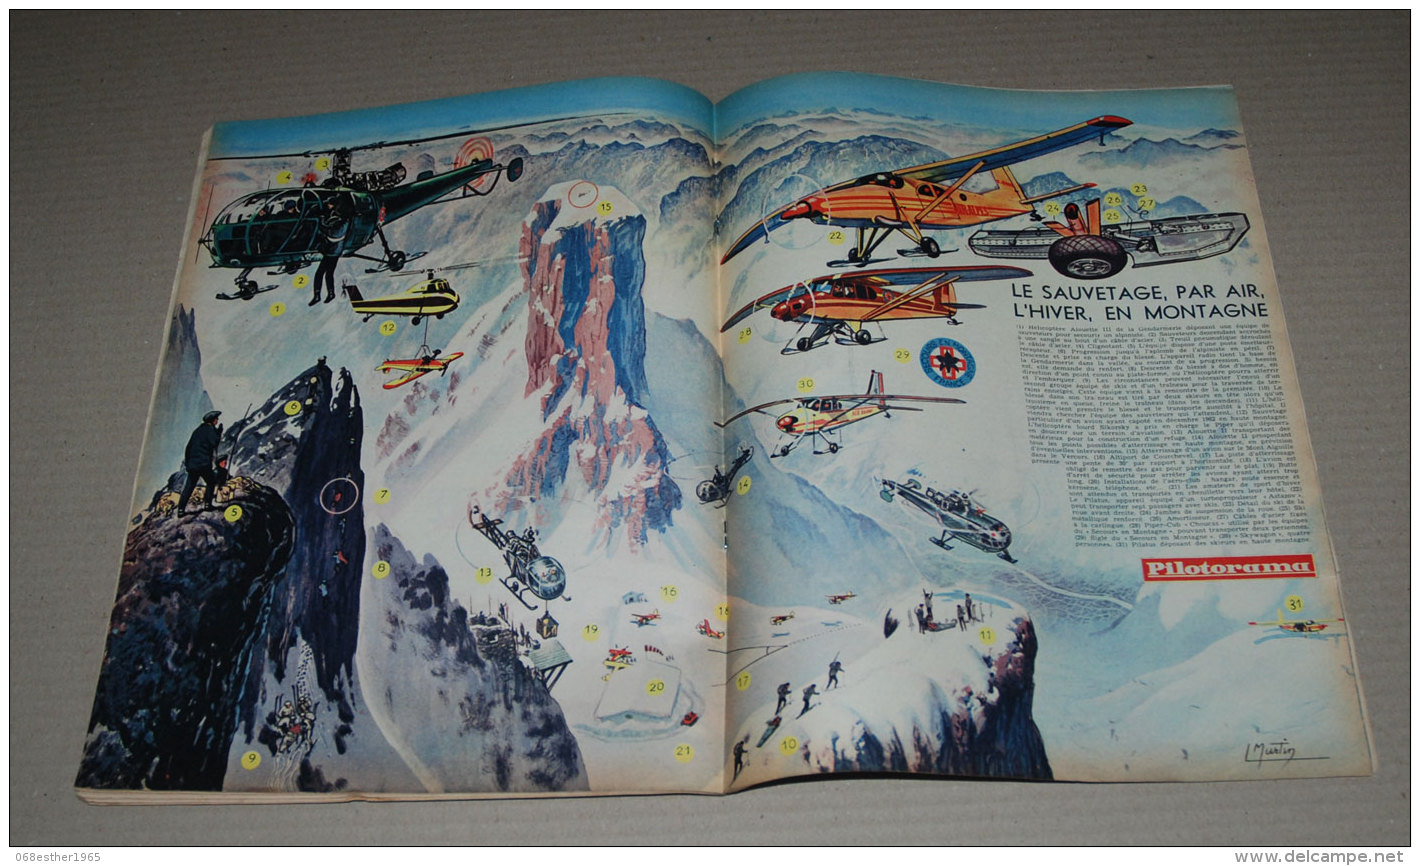 PILOTE 327 De 1966 Couv Ache + Pilotorama Sauvetage Par Air L’hiver En Montagne - Pilote